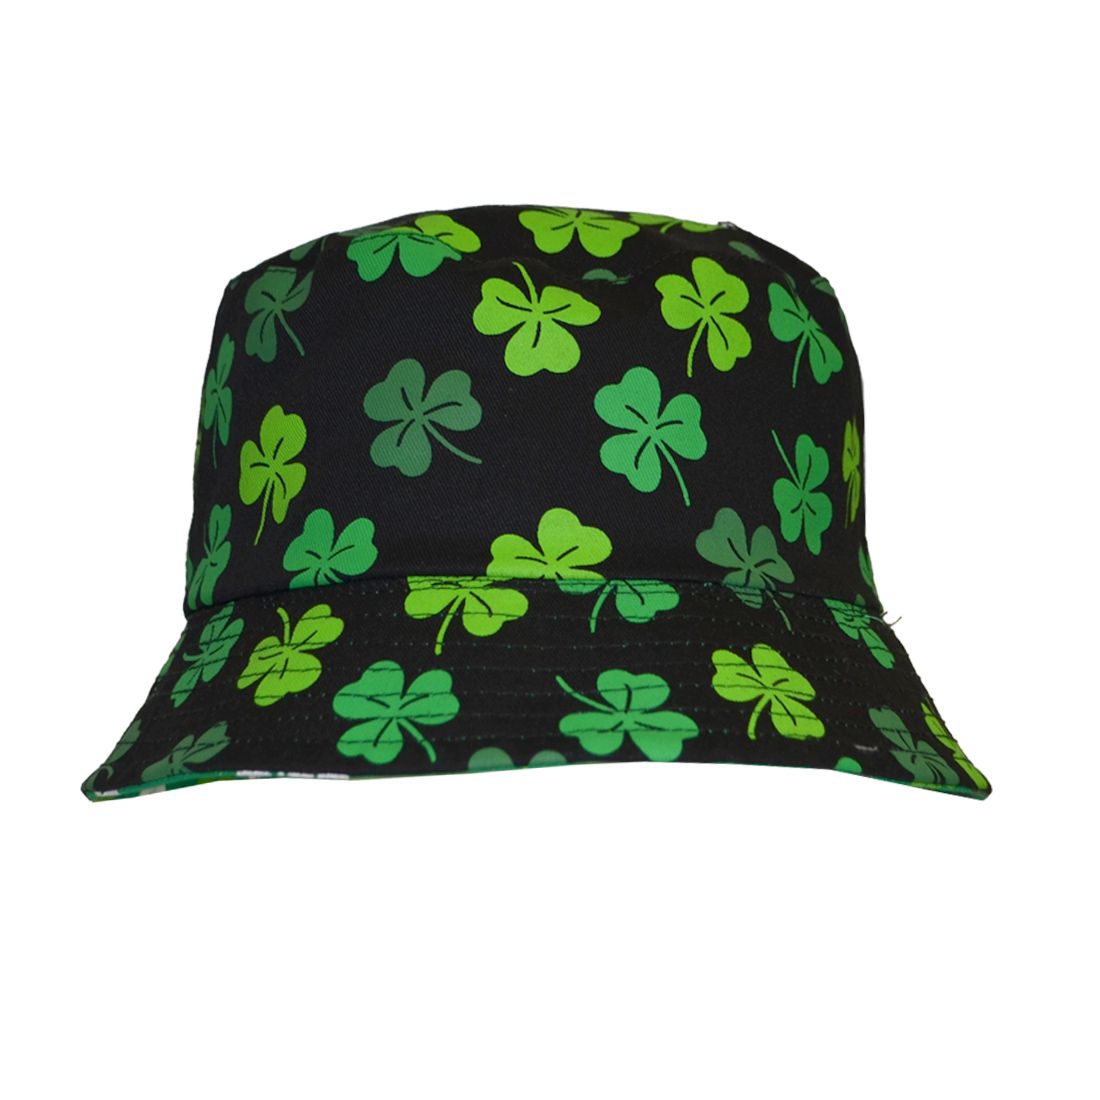 Trendiger irischer Bucket Hat in angesagter Topfhutform